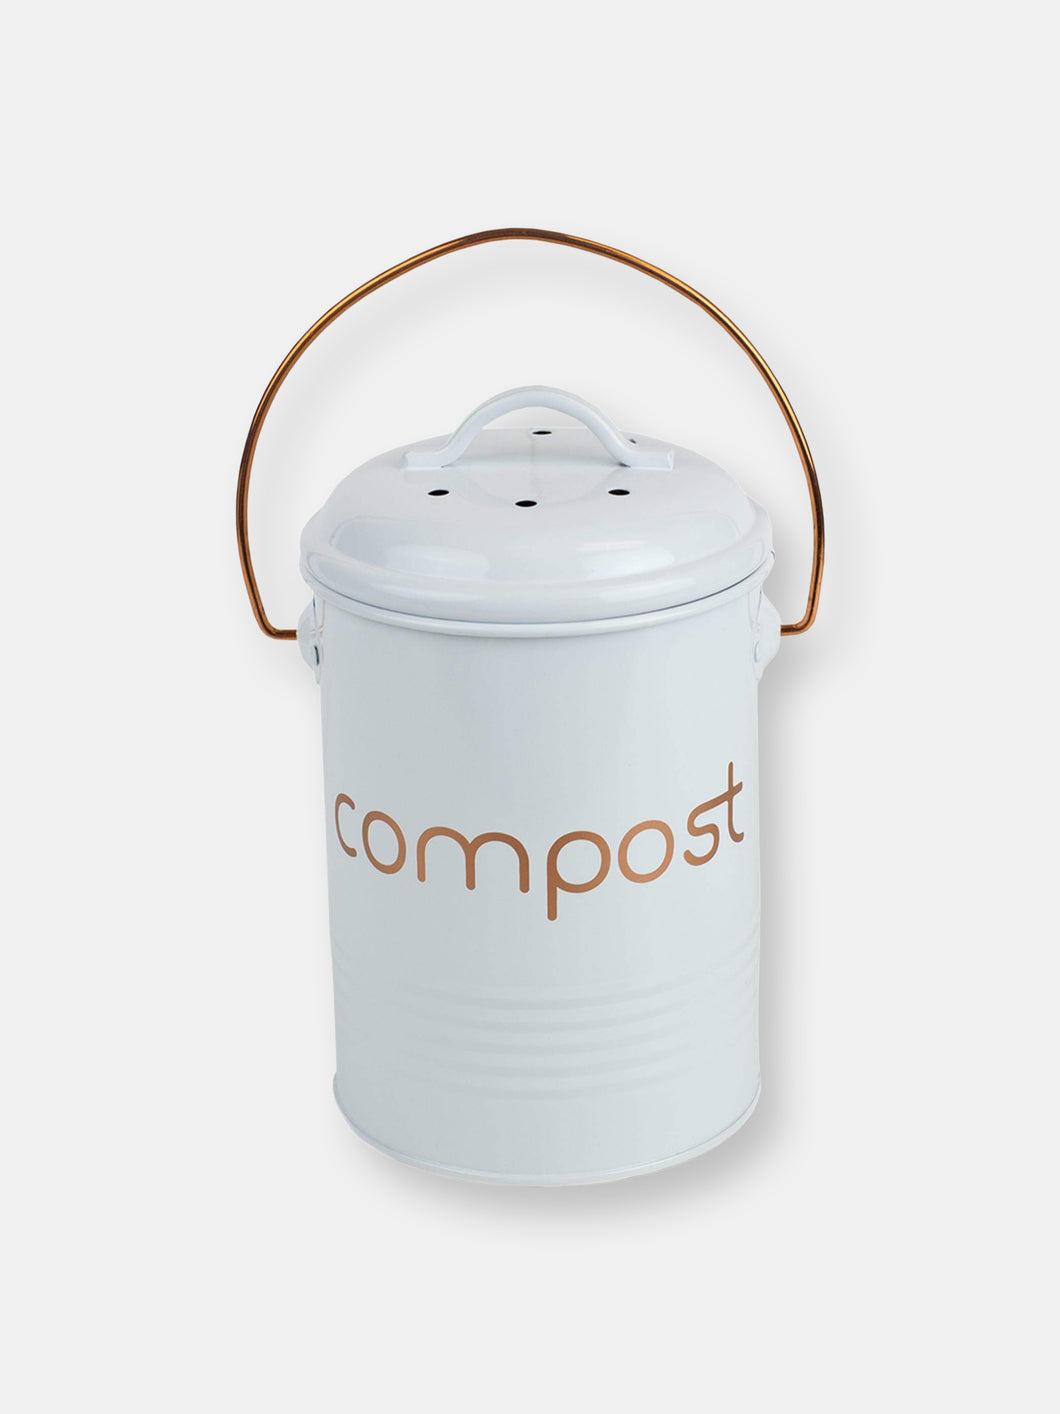 Grove Compact Countertop Compost Bin, White